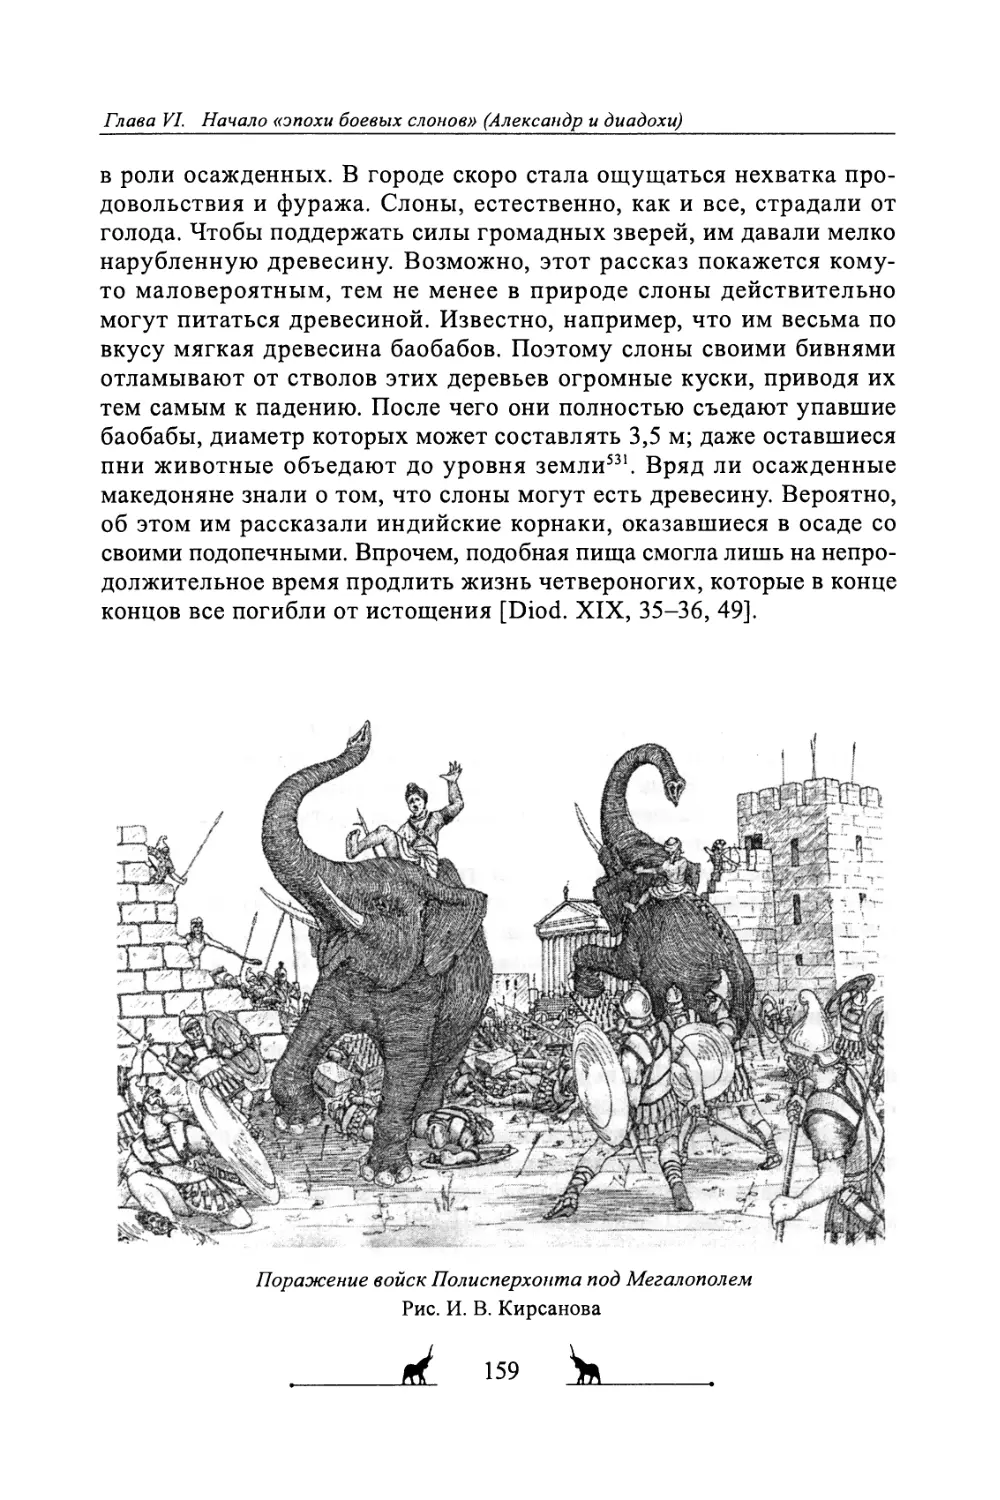 Боевые слоны в армии Антигона